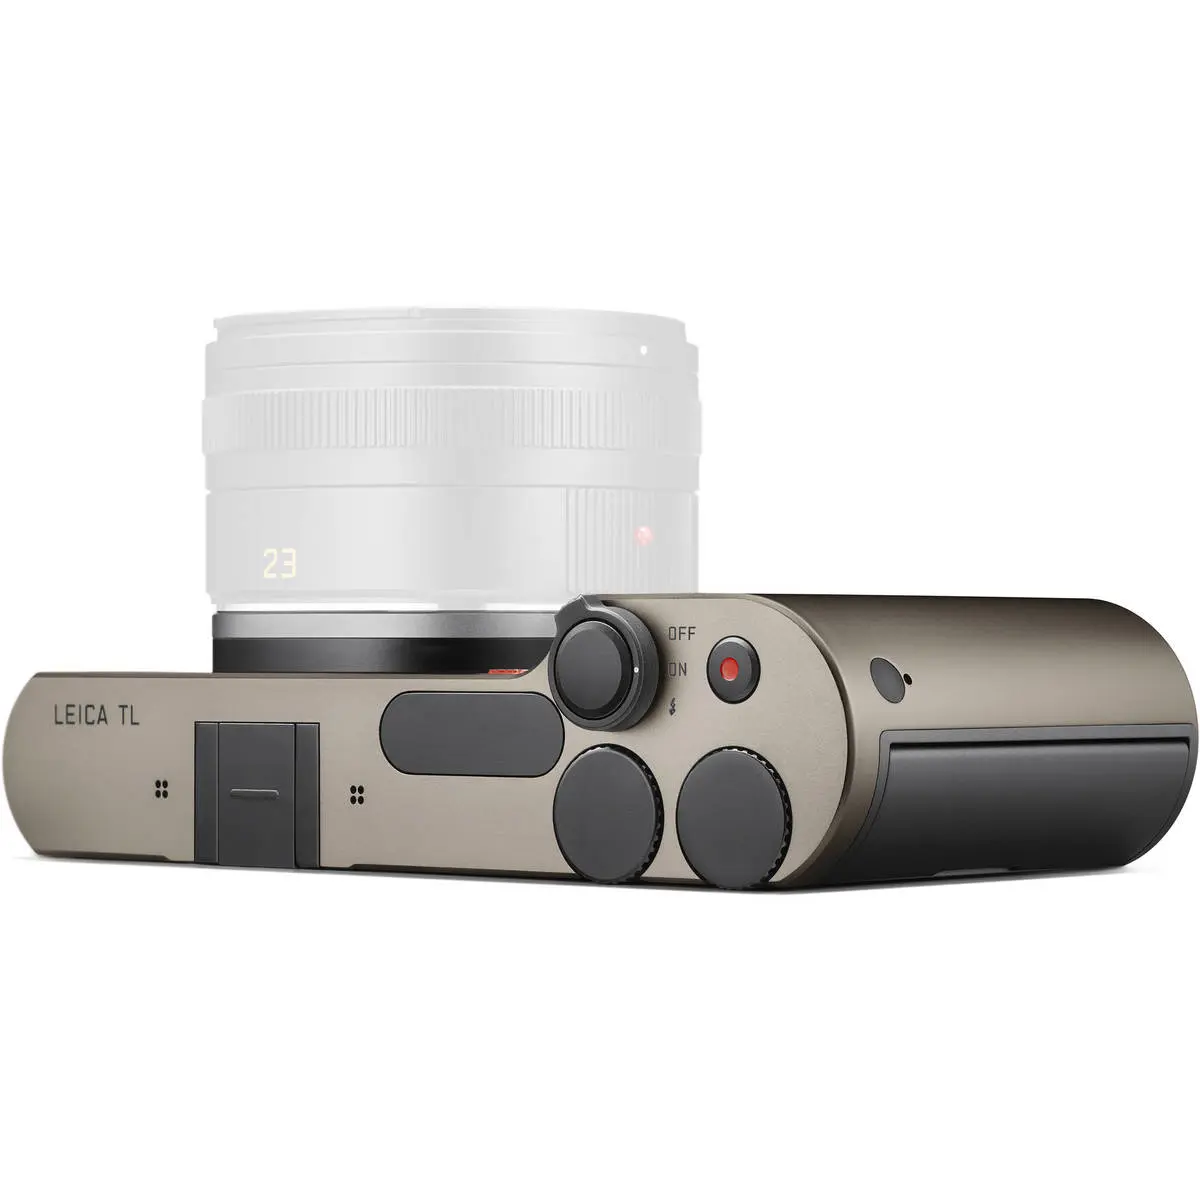 8. Leica TL Body 18112 (Titanium) Camera